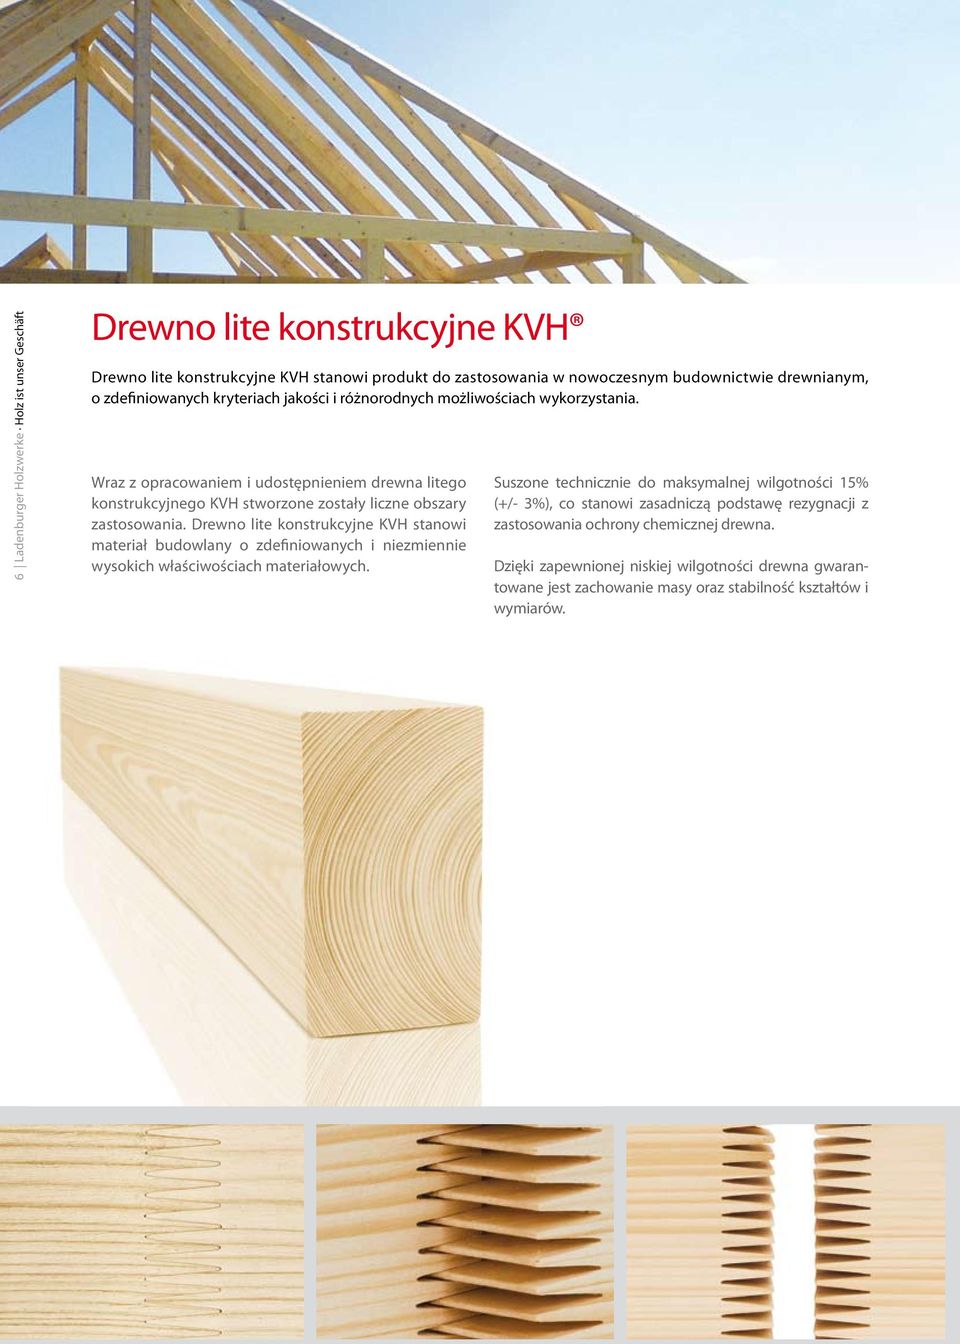 Wraz z opracowaniem i udostępnieniem drewna litego konstrukcyjnego KVH stworzone zostały liczne obszary zastosowania.